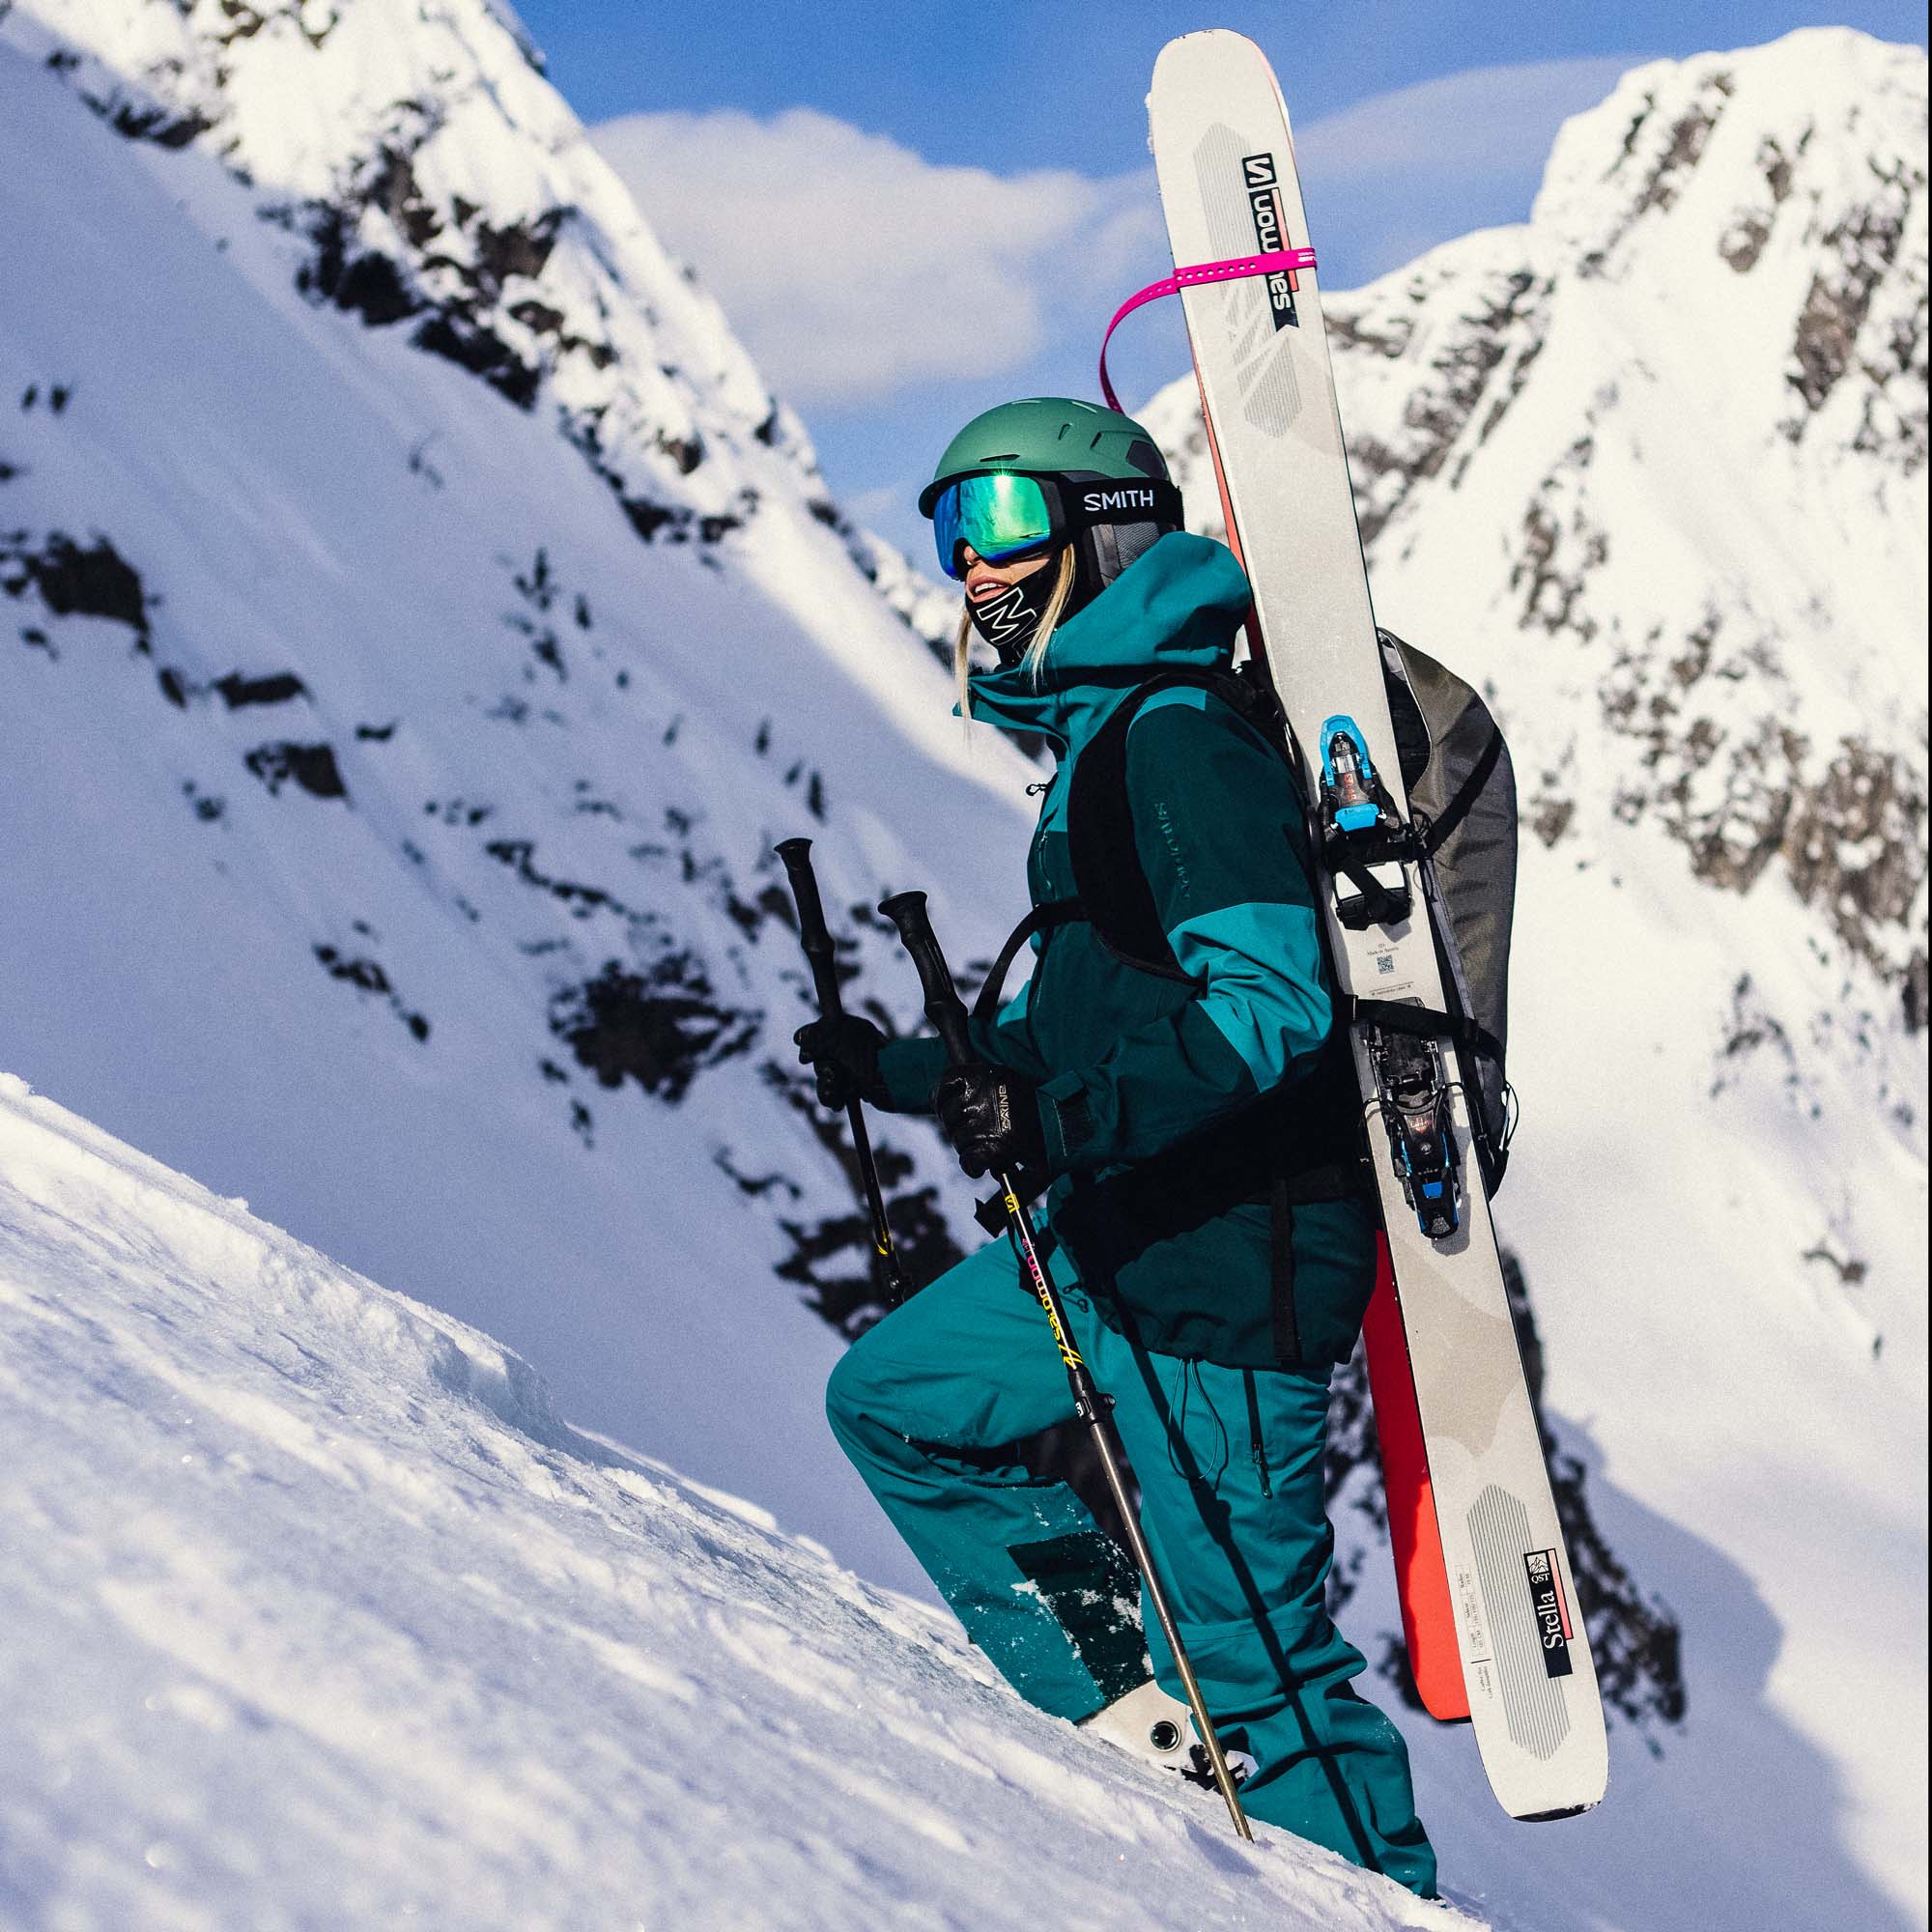 Smith 4D MAG S Snowboard/Ski Goggles